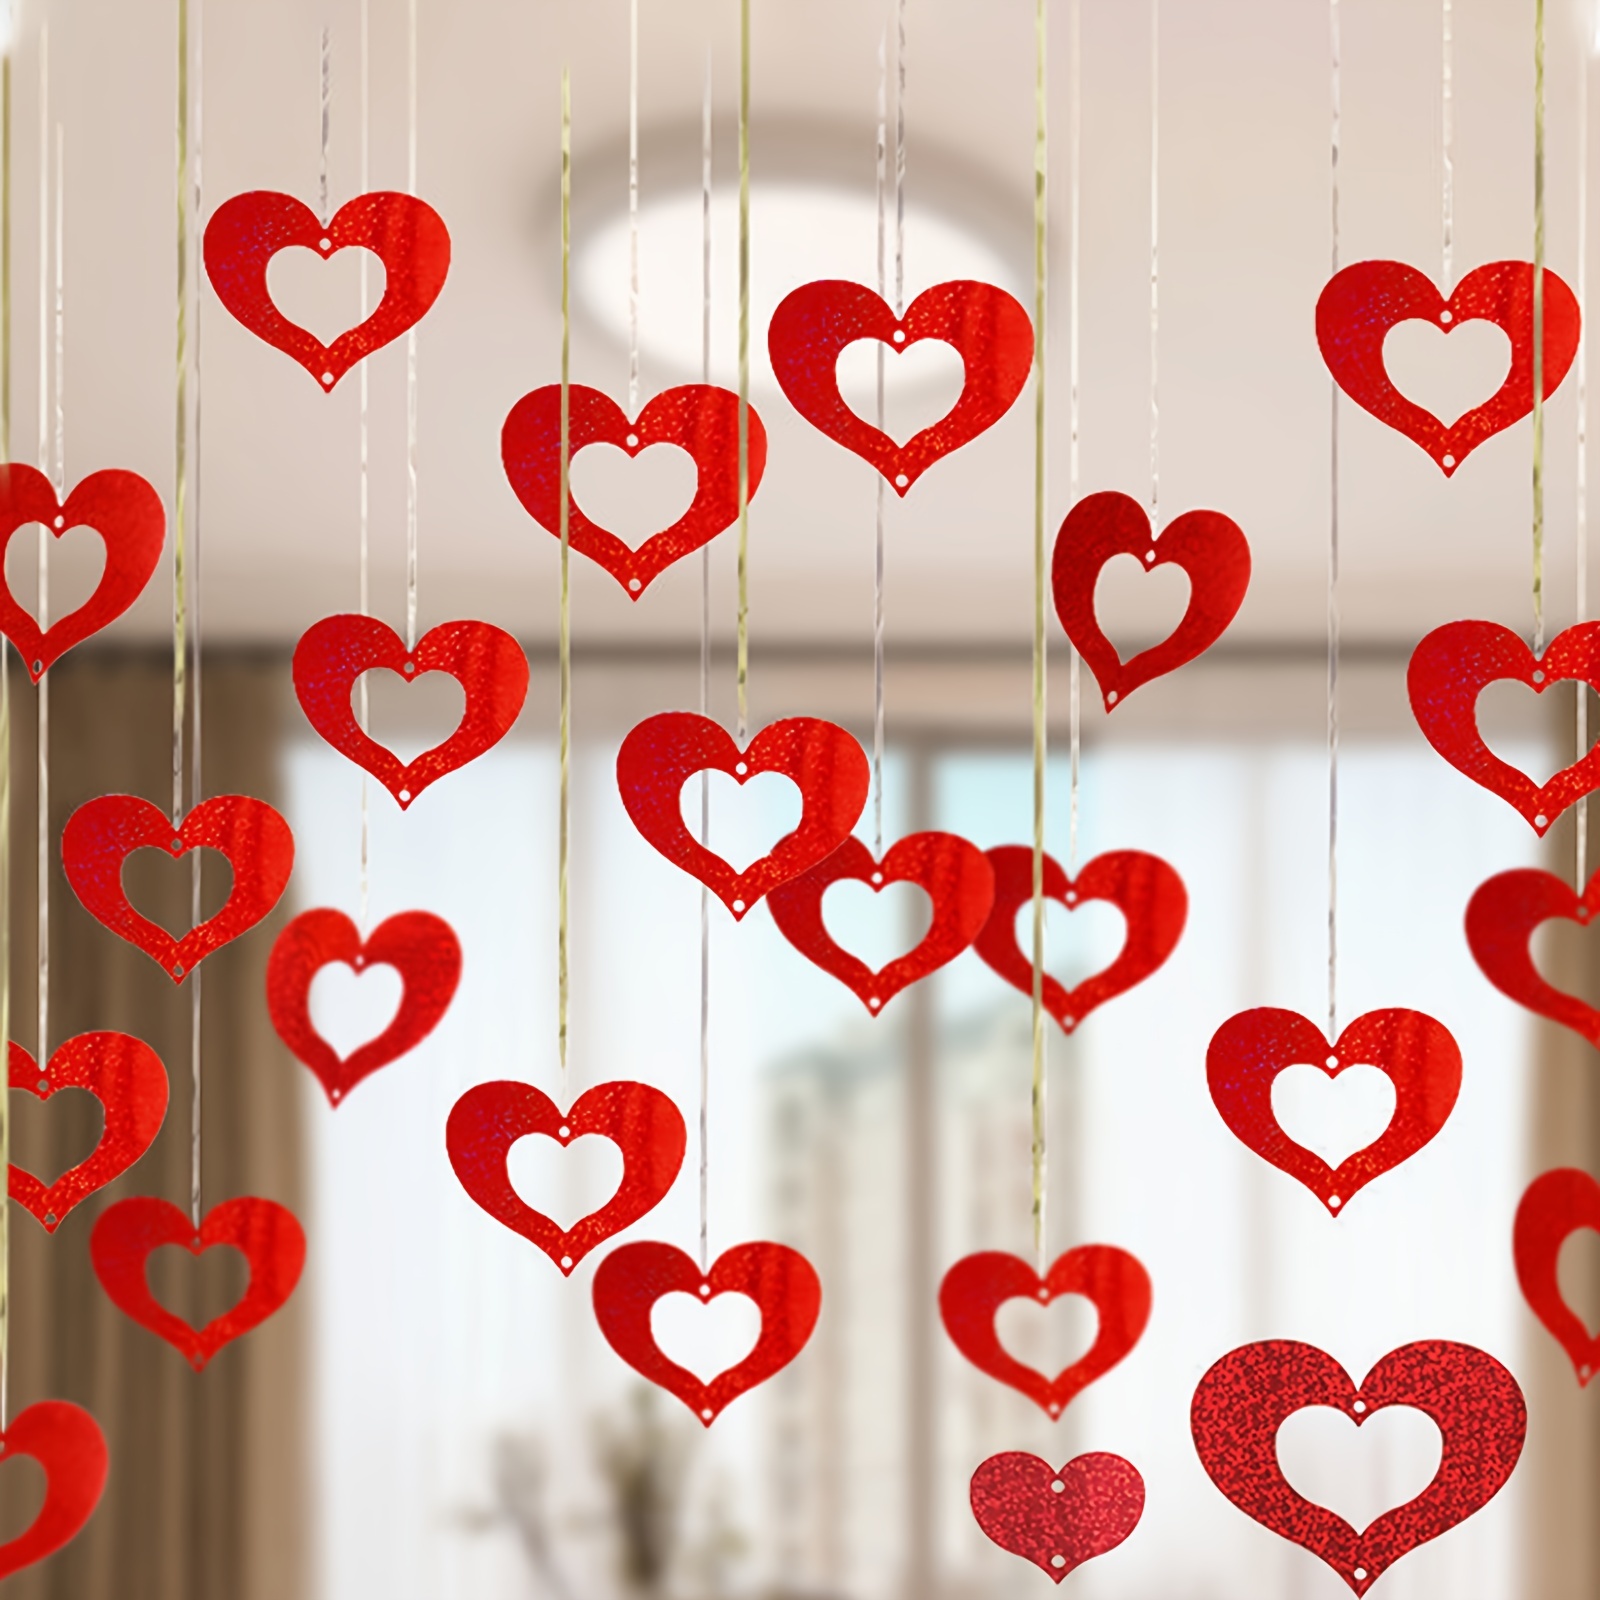 DIY paper heart chandelier | Valentine's Day decor | Inspired to Share - …  | Diy valentine's day decorations, Valentines day decorations, Diy  valentines decorations